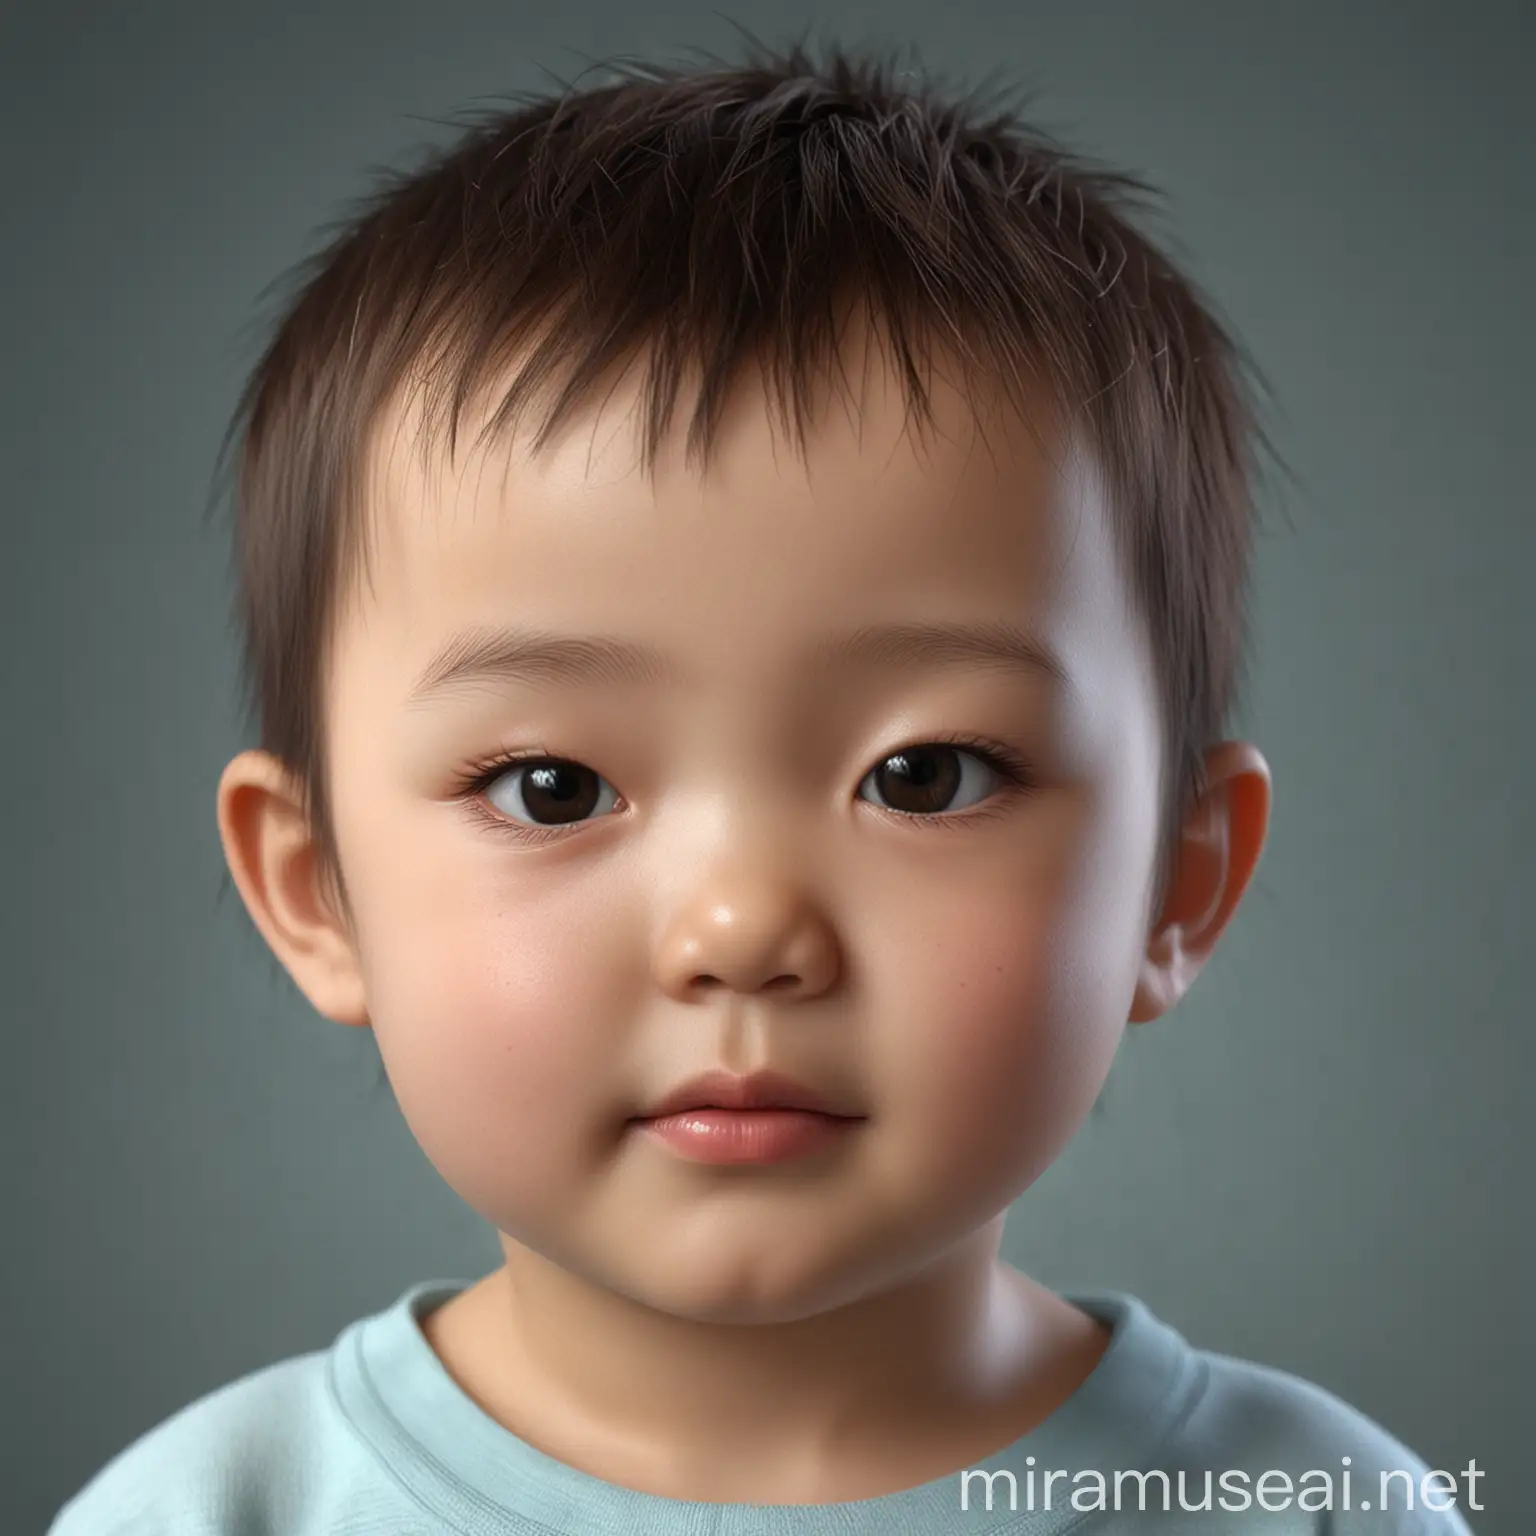 这是一张孩子的3维照片， 请预测一下孩子的长相，孩子是中国人
